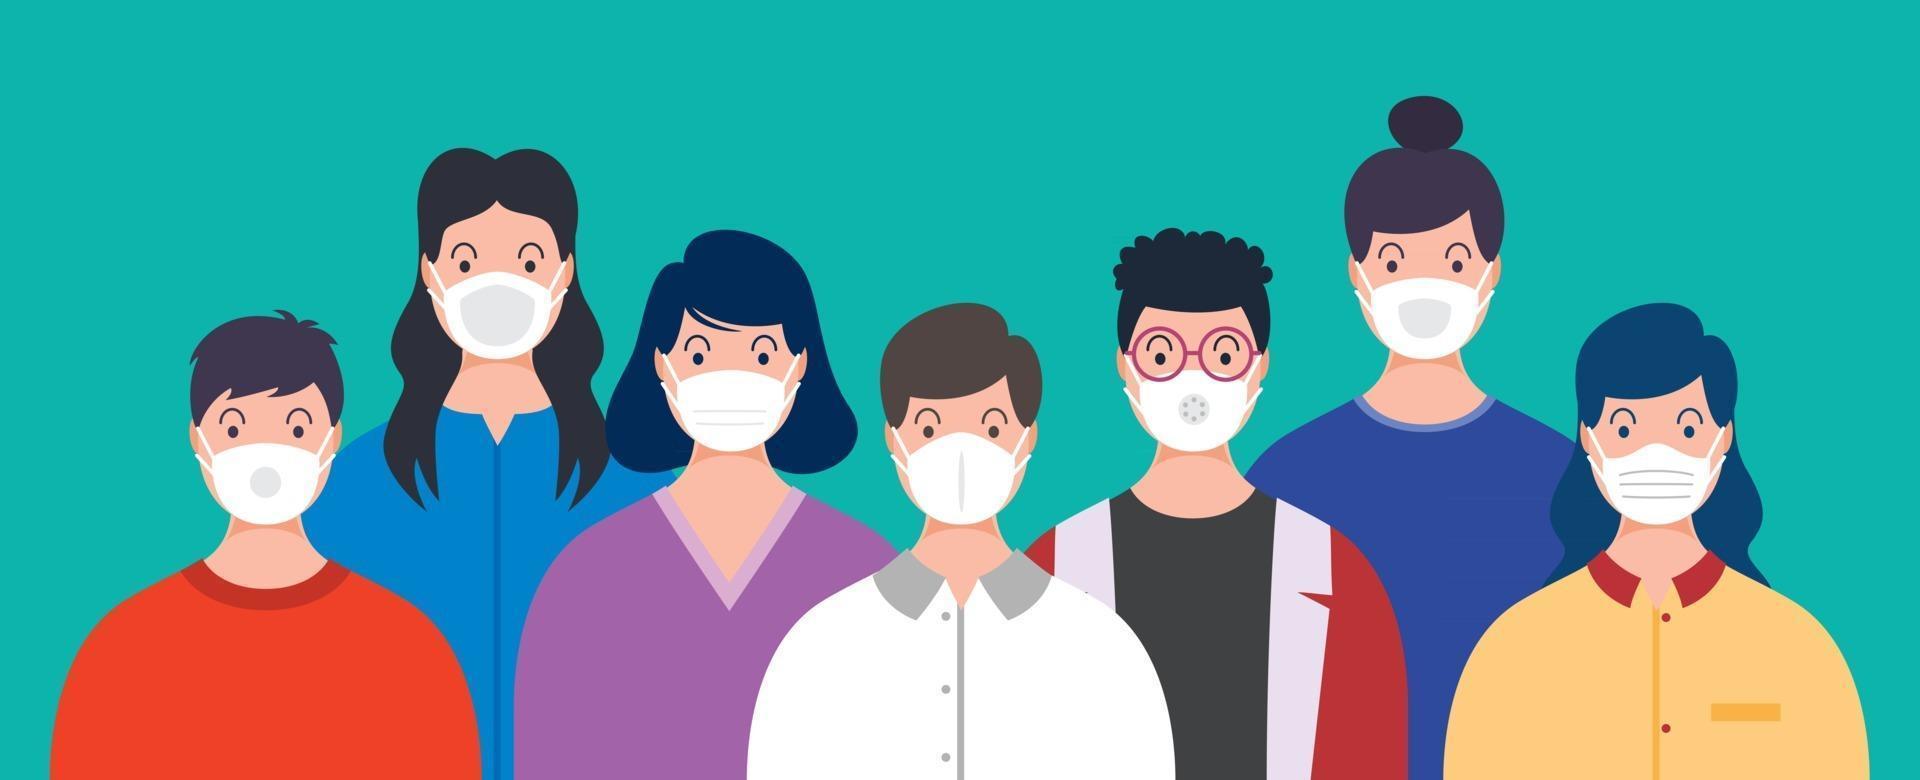 gezondheidsconcept van mensen die medische maskers dragen vector